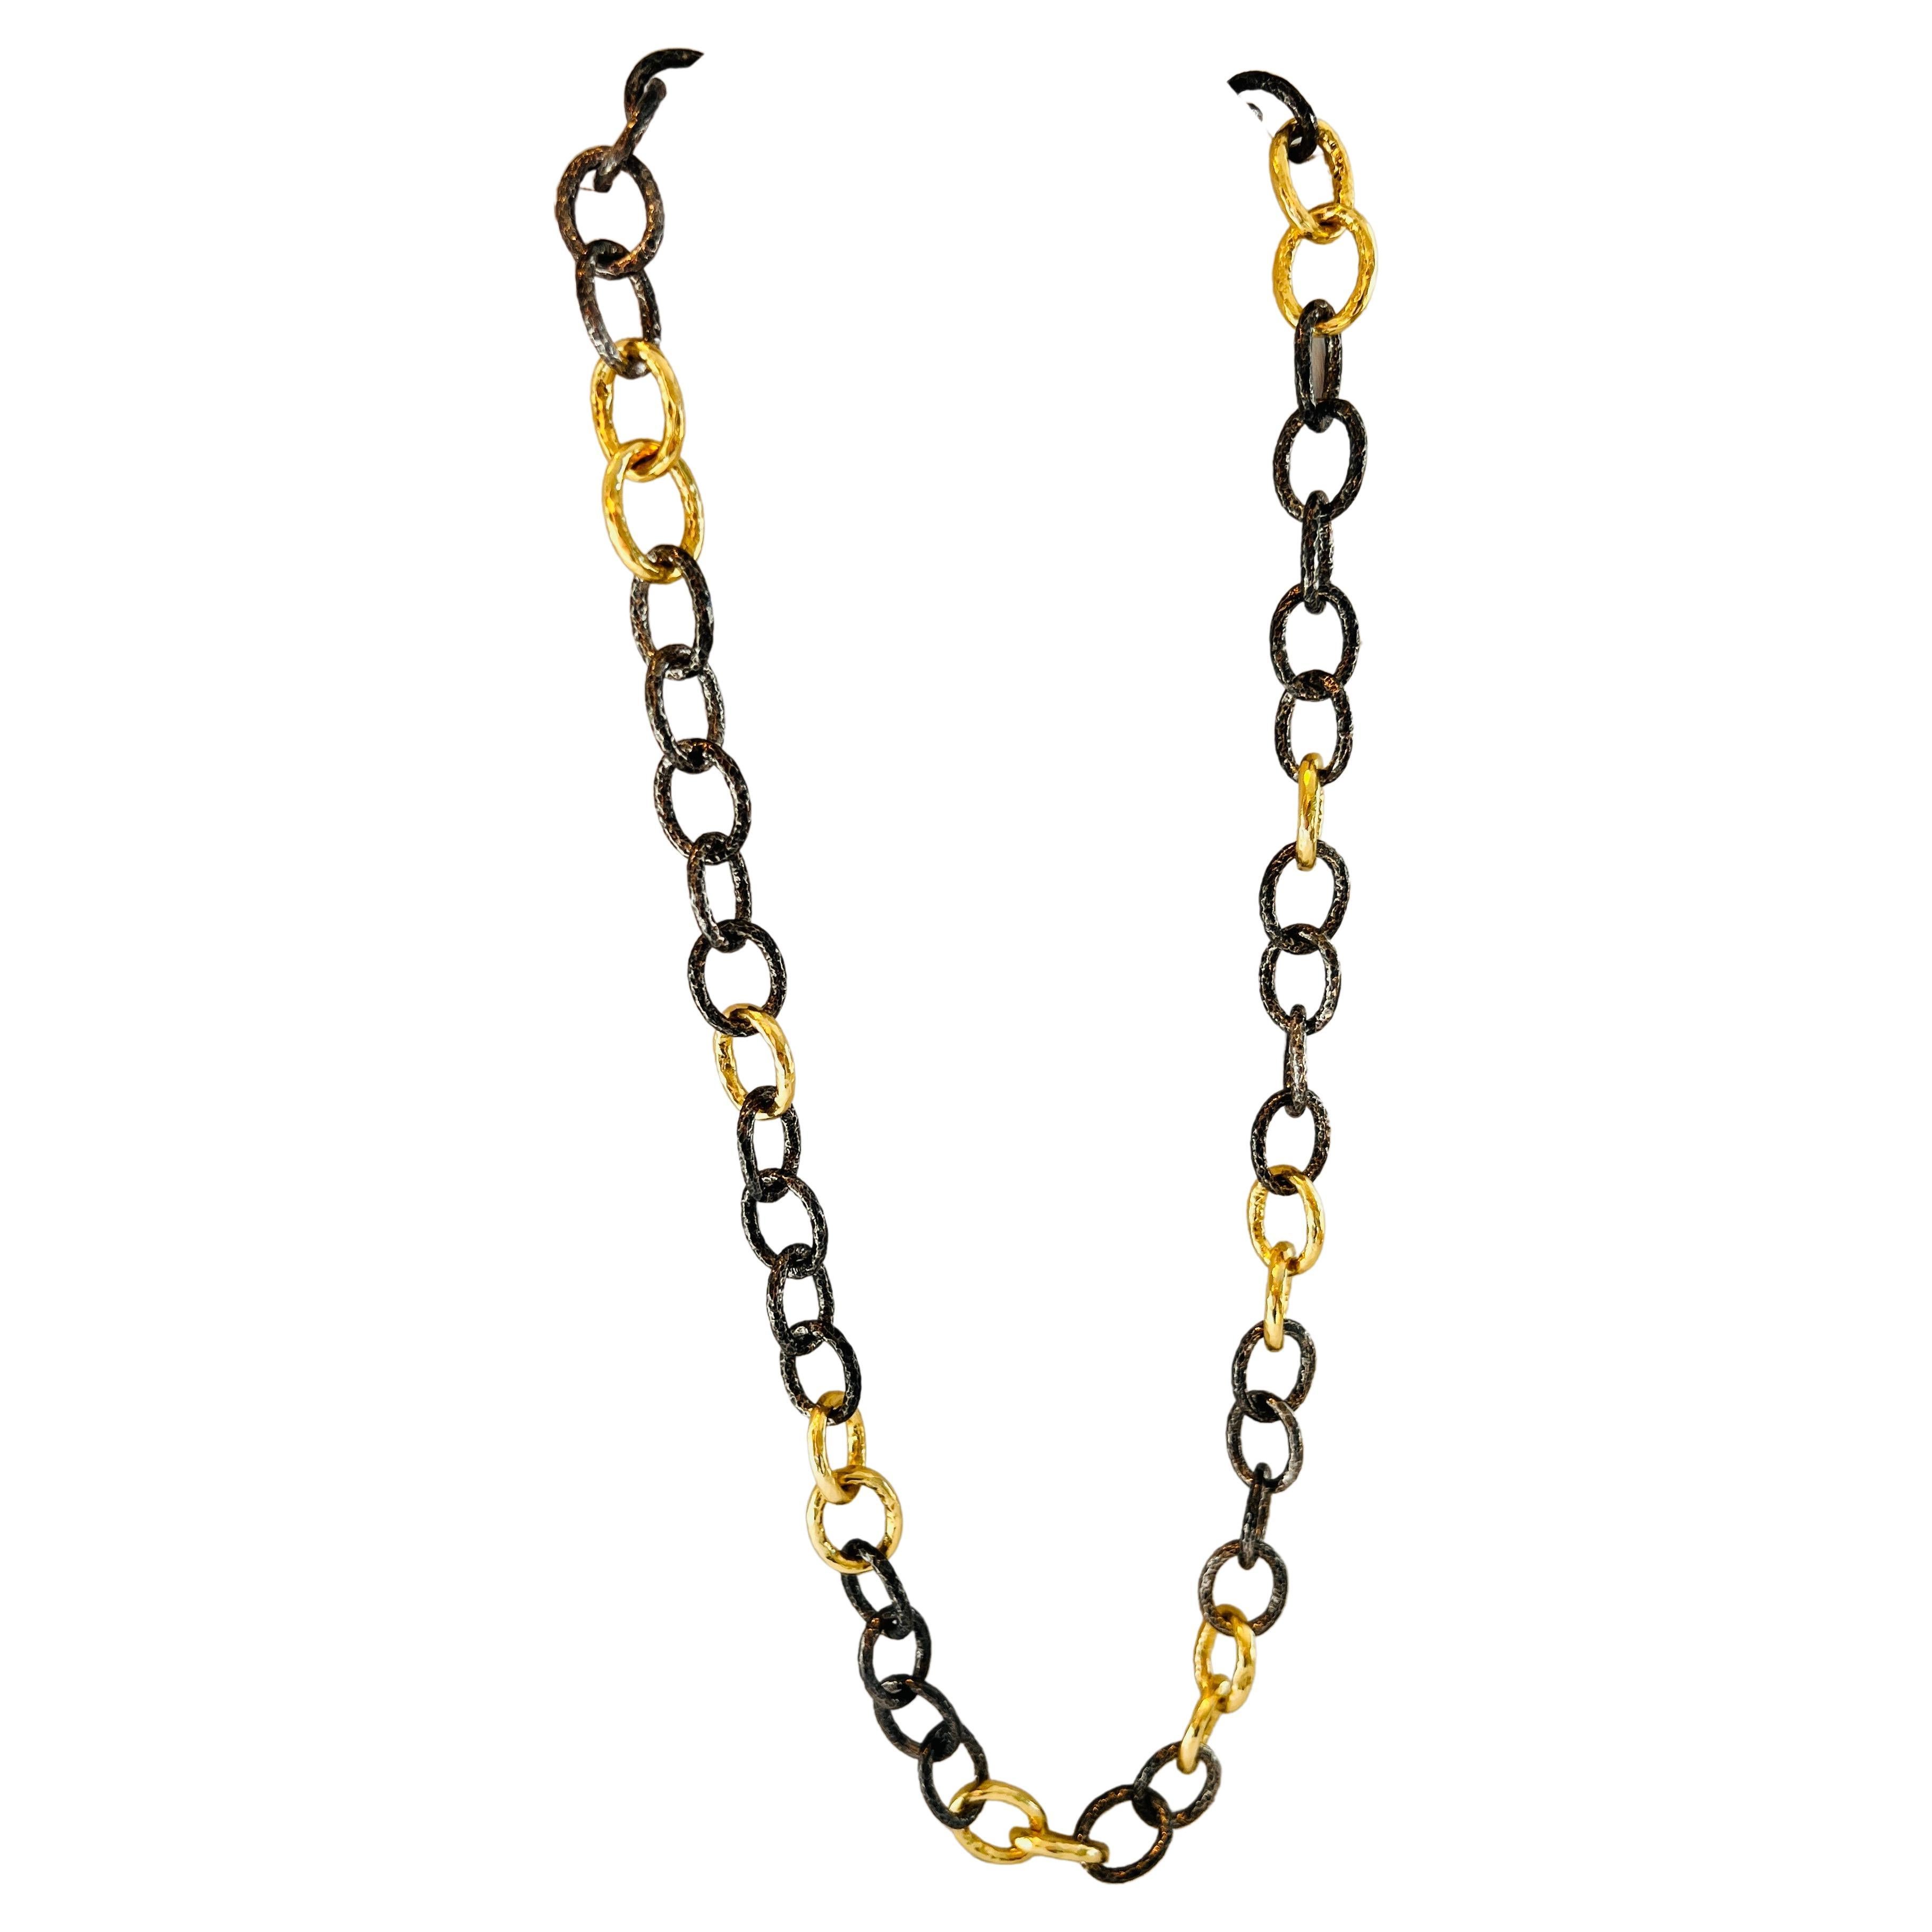 Le collier 50/50 en argent noirci et or de 63,5 cm, par Tagili